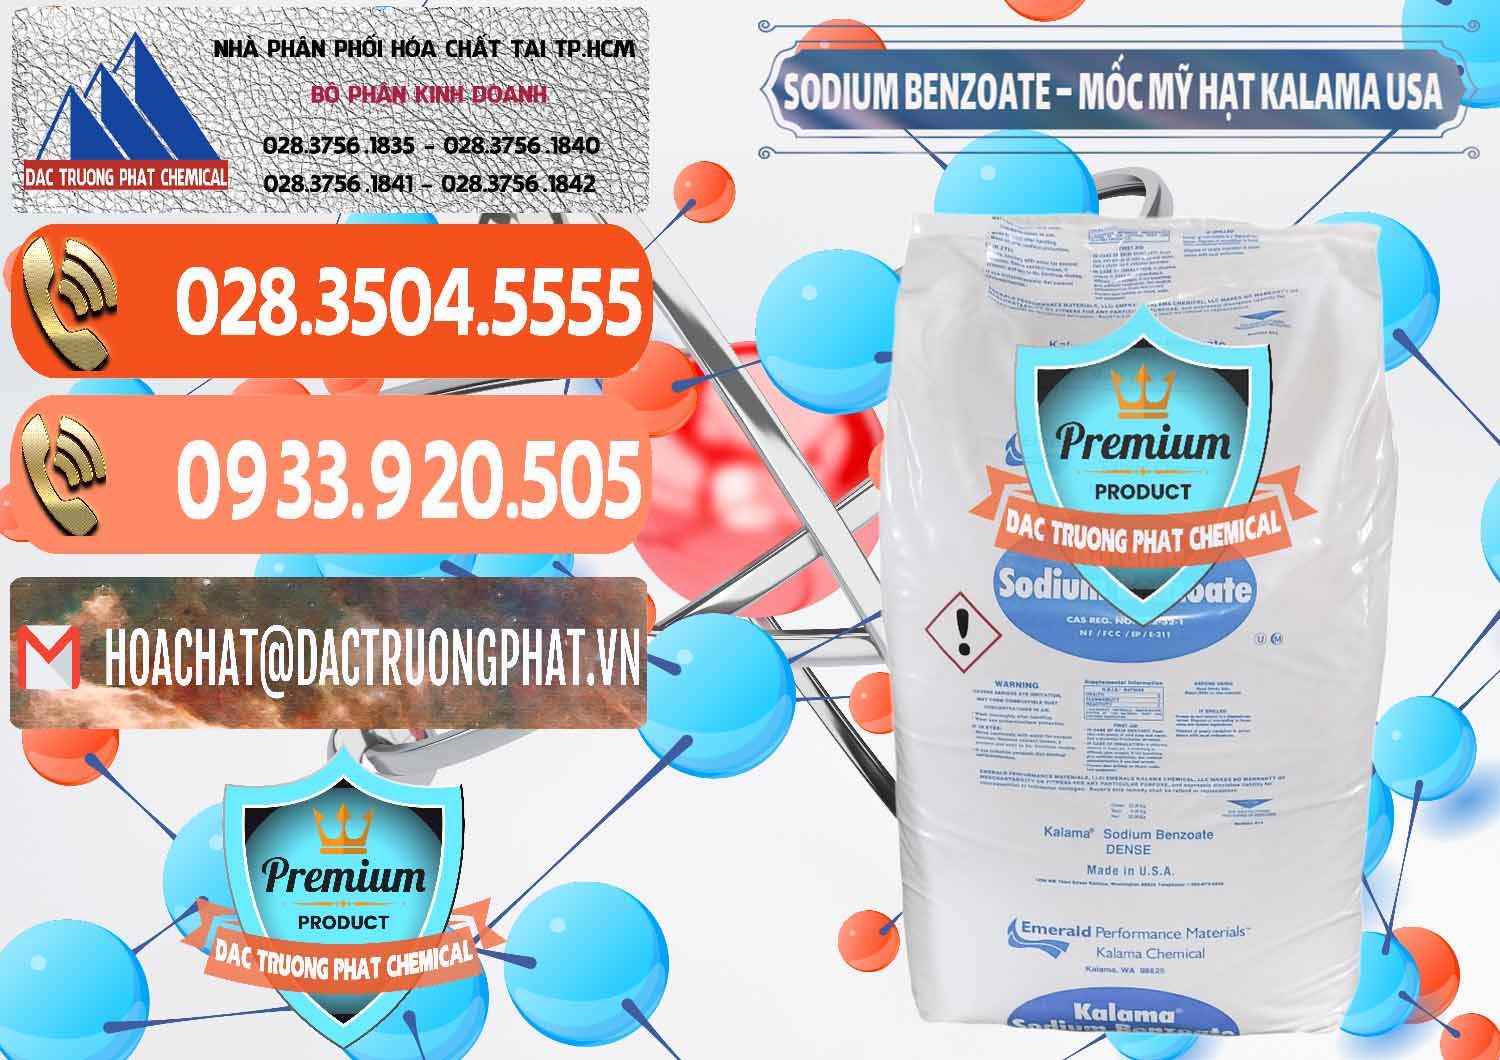 Cty chuyên cung cấp & bán Sodium Benzoate - Mốc Hạt Kalama Food Grade Mỹ Usa - 0137 - Cty chuyên nhập khẩu & cung cấp hóa chất tại TP.HCM - hoachatmientay.com